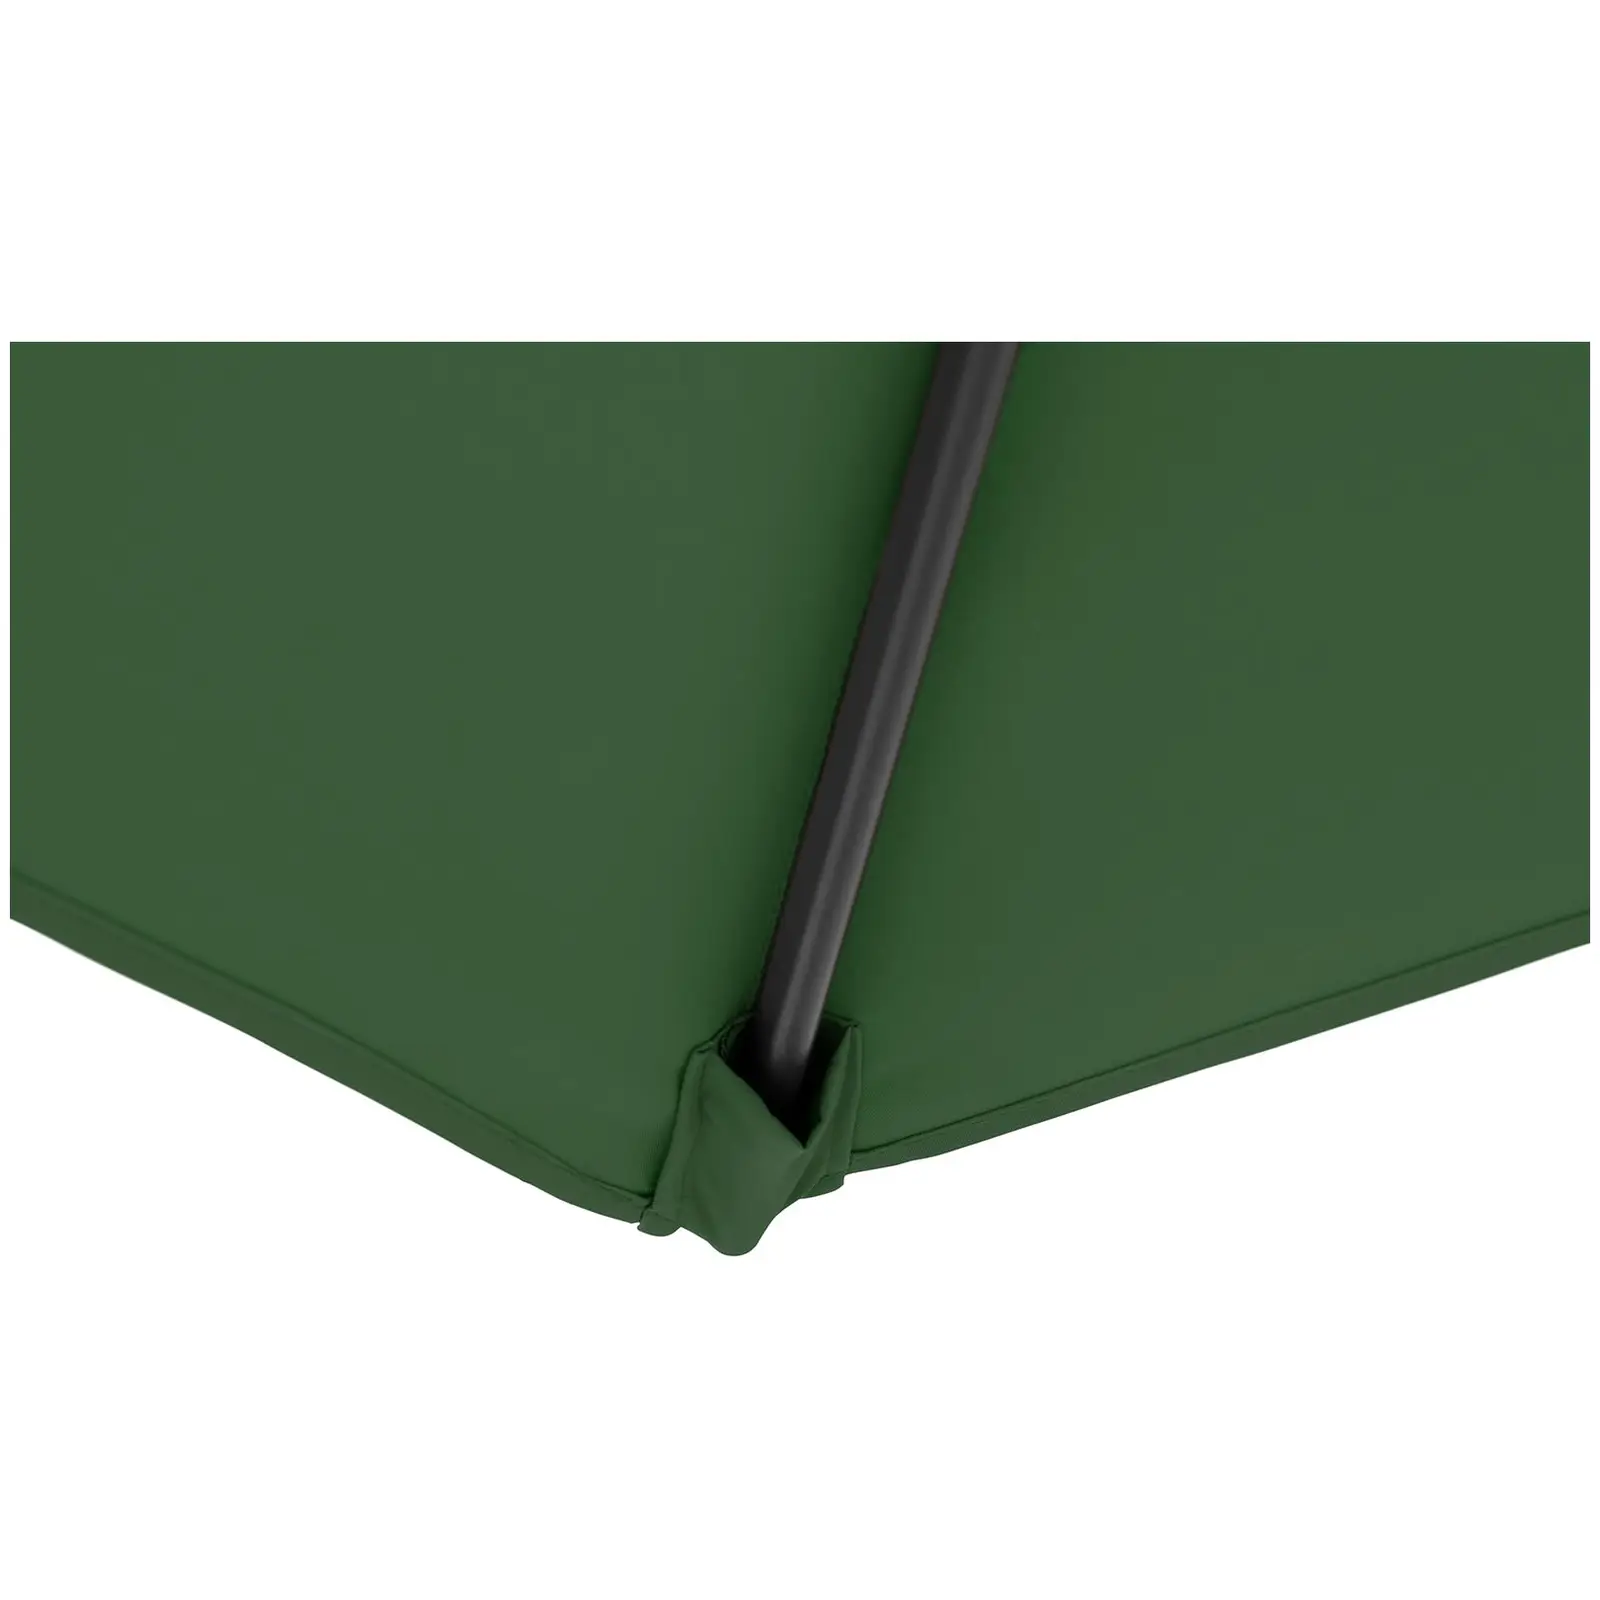 Andrahandssortering Hängparasoll - grönt - runt - Ø 300 cm - kan lutas och vridas